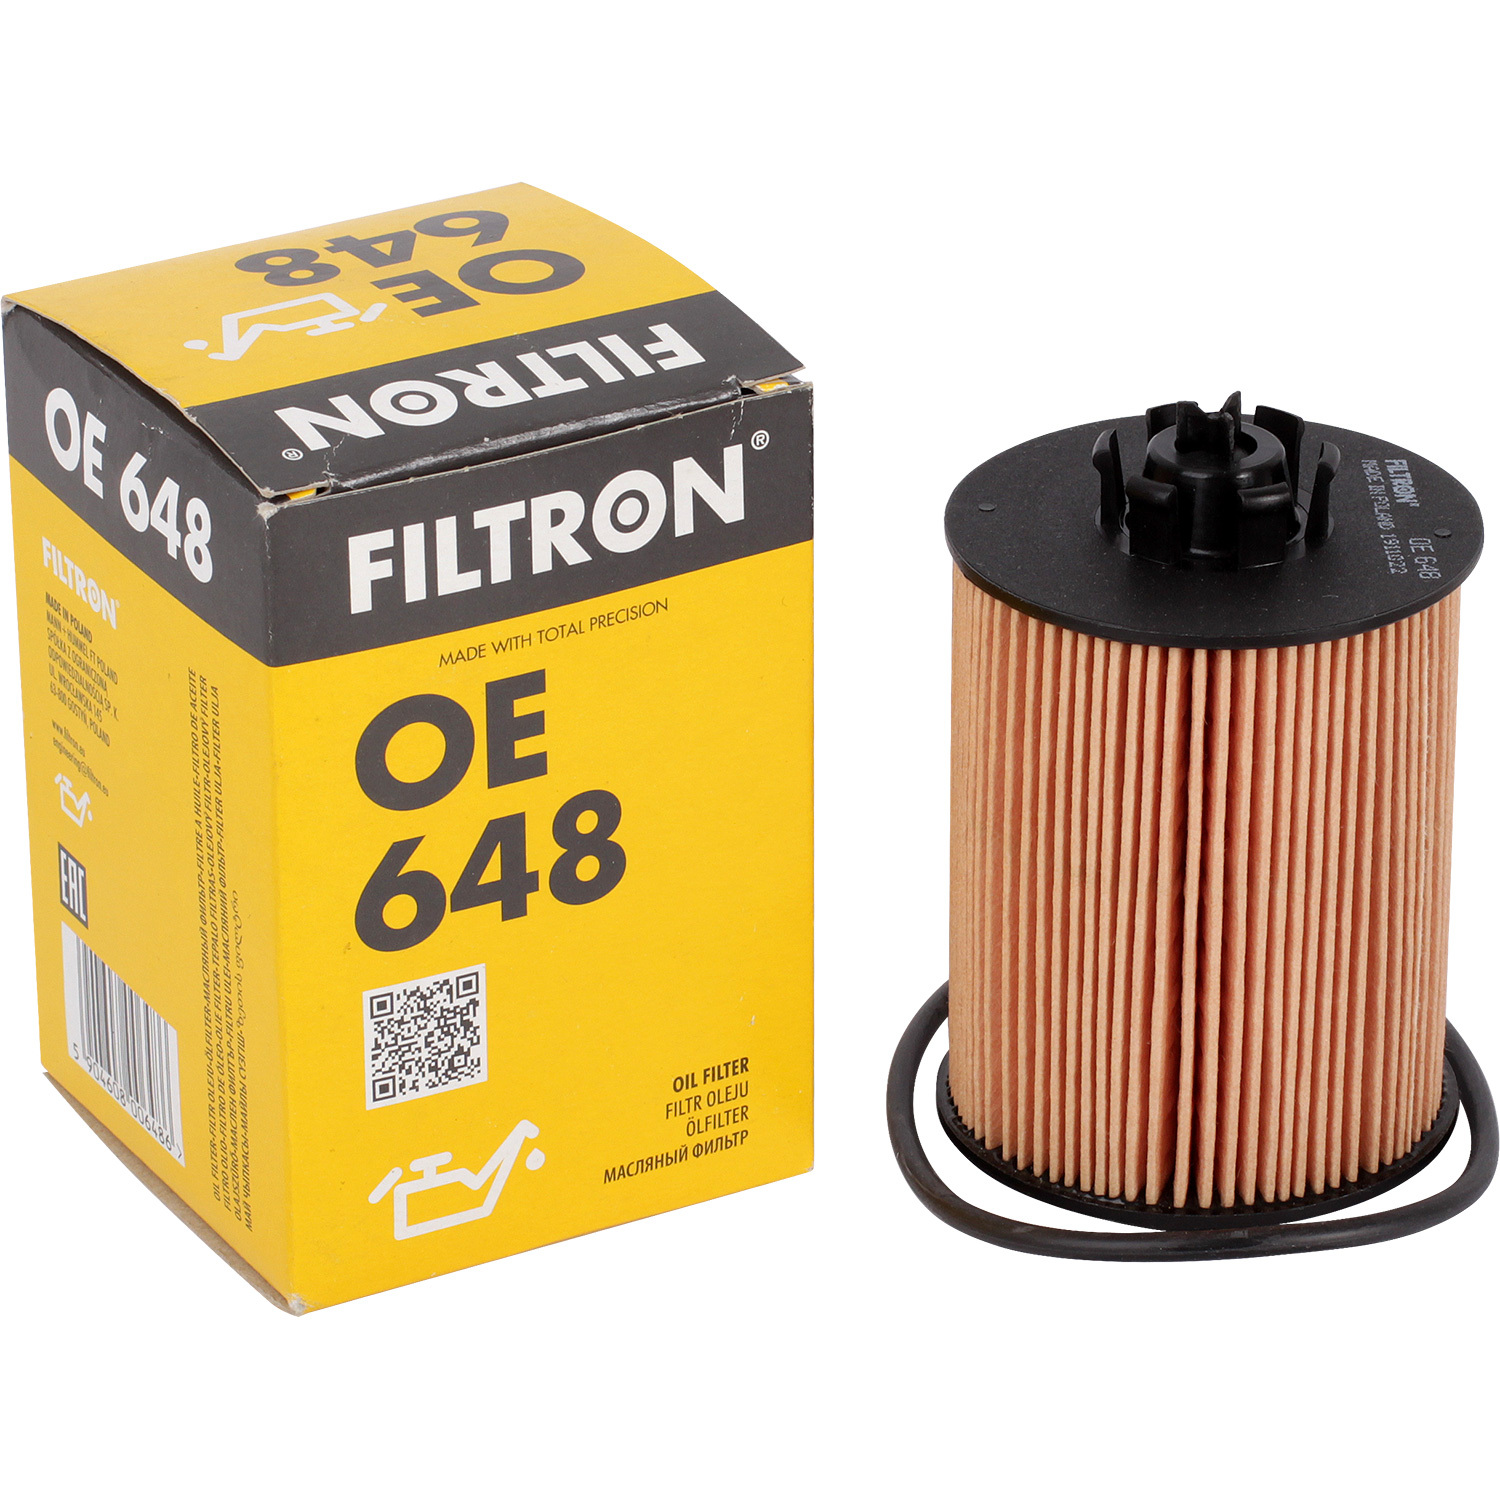 фильтры filtron фильтр масляный filtron op545 Фильтры Filtron Фильтр масляный Filtron OE648